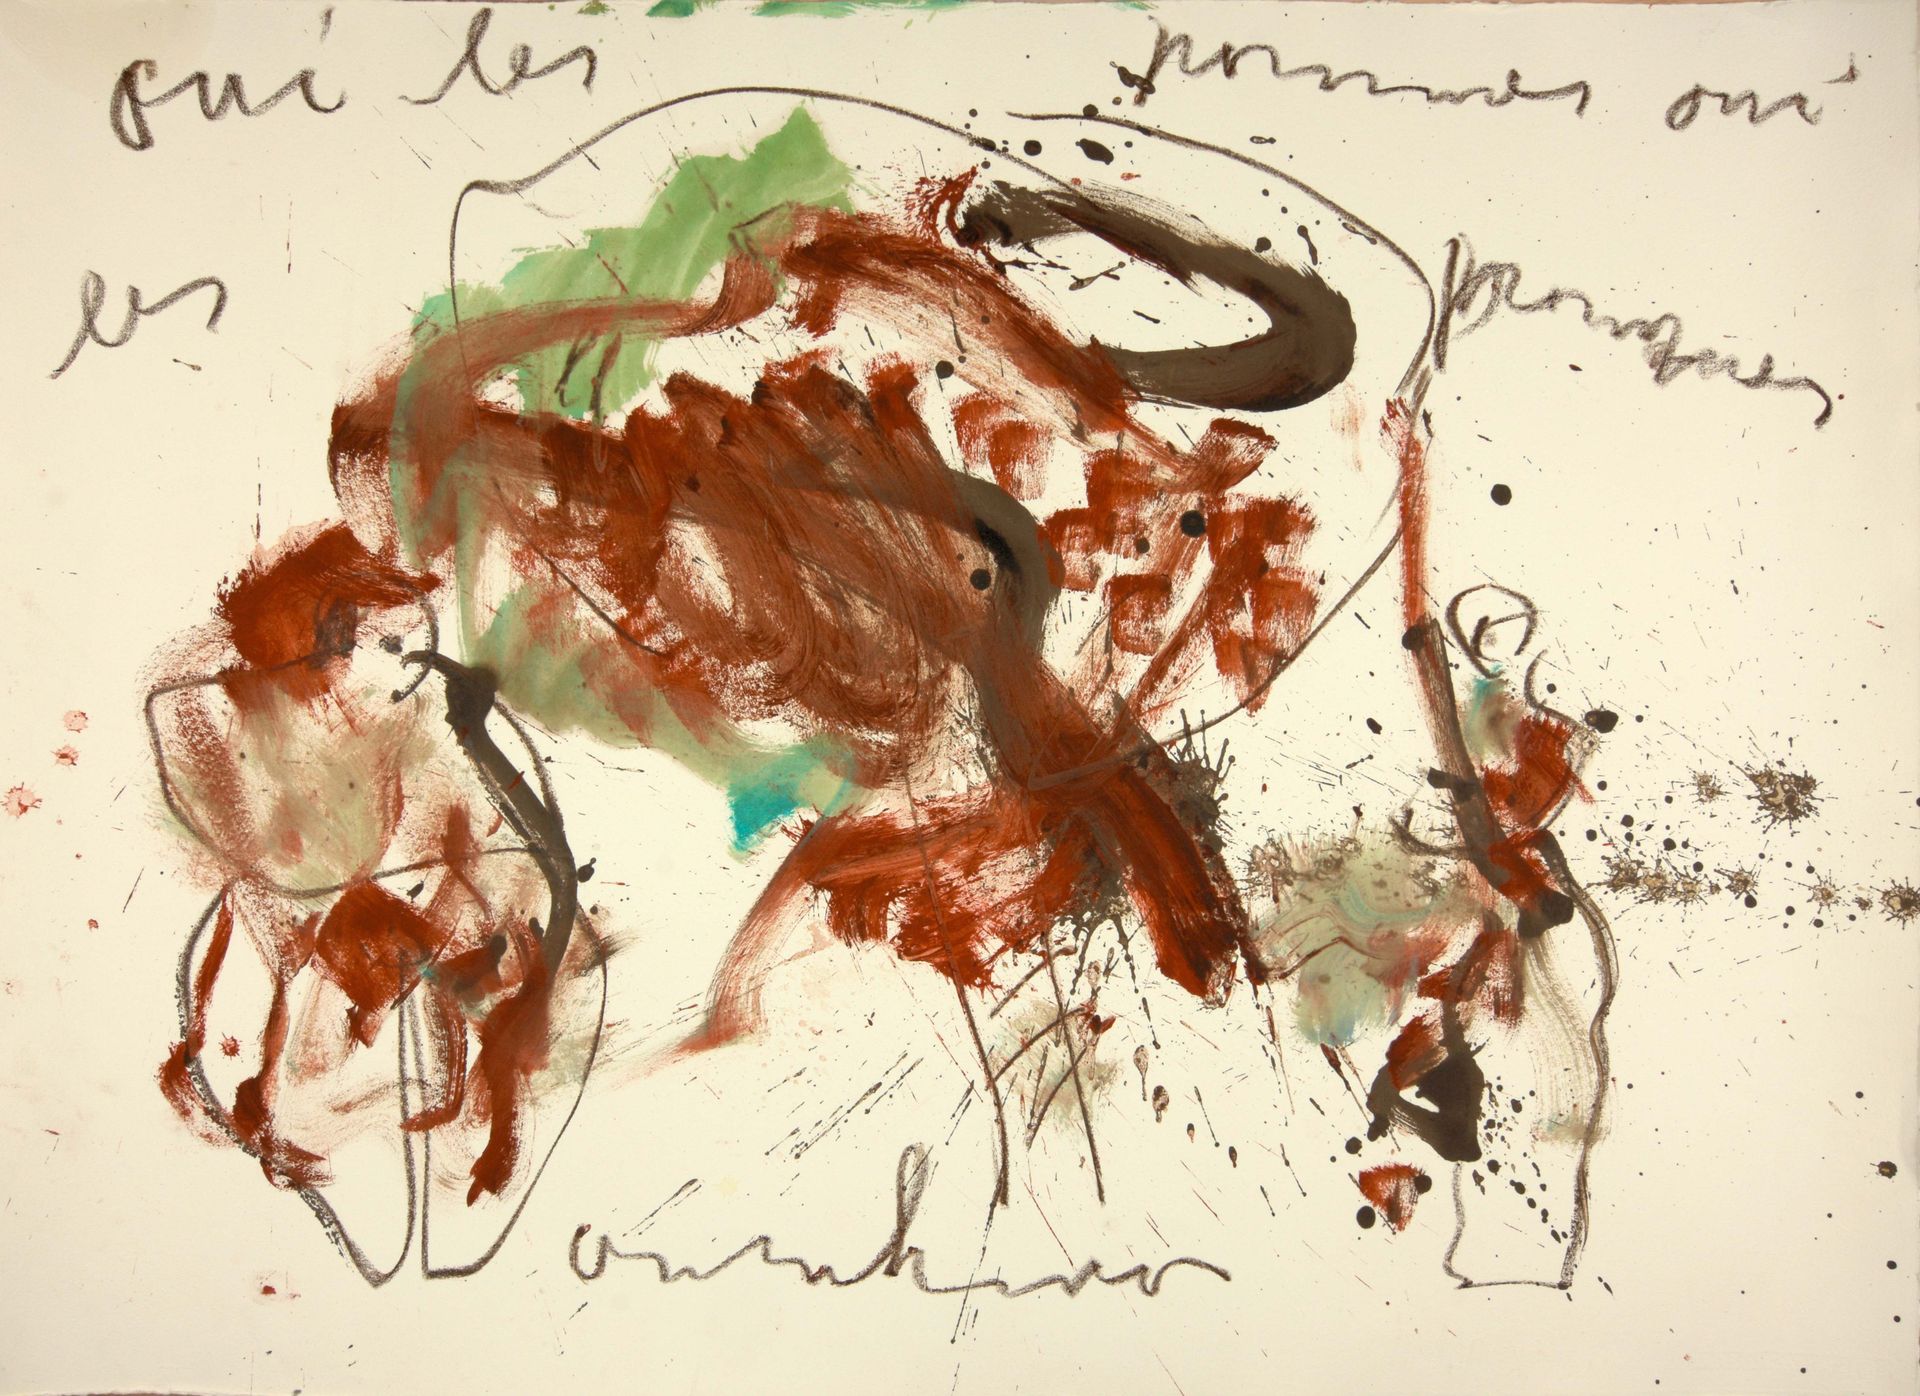 HEYBOER, Anton (1924-2005) Vrouw en appelboom

Mixed media (78 x 108 cm), ondera&hellip;